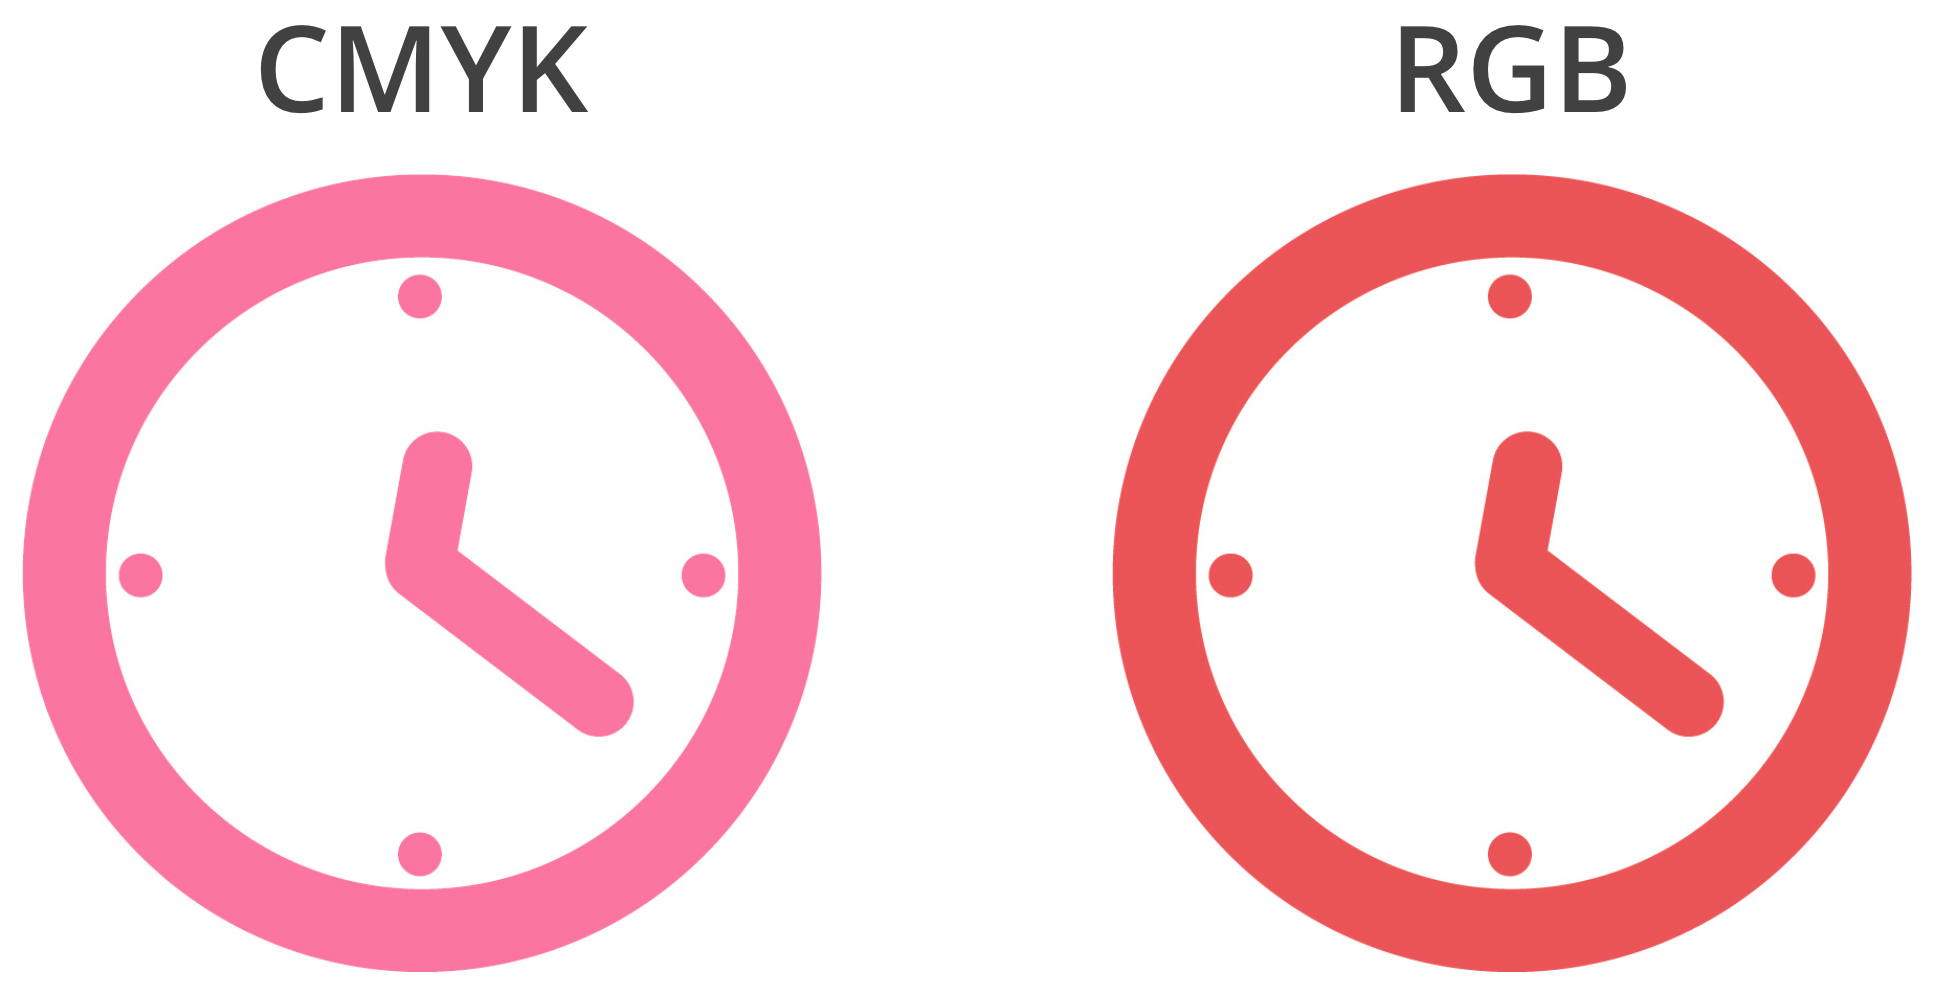 Er is een fletse versie van een afbeelding van een klok te zien aan de linkerkant en aan de rechterkant een afbeelding van een klok, volledig in kleur.